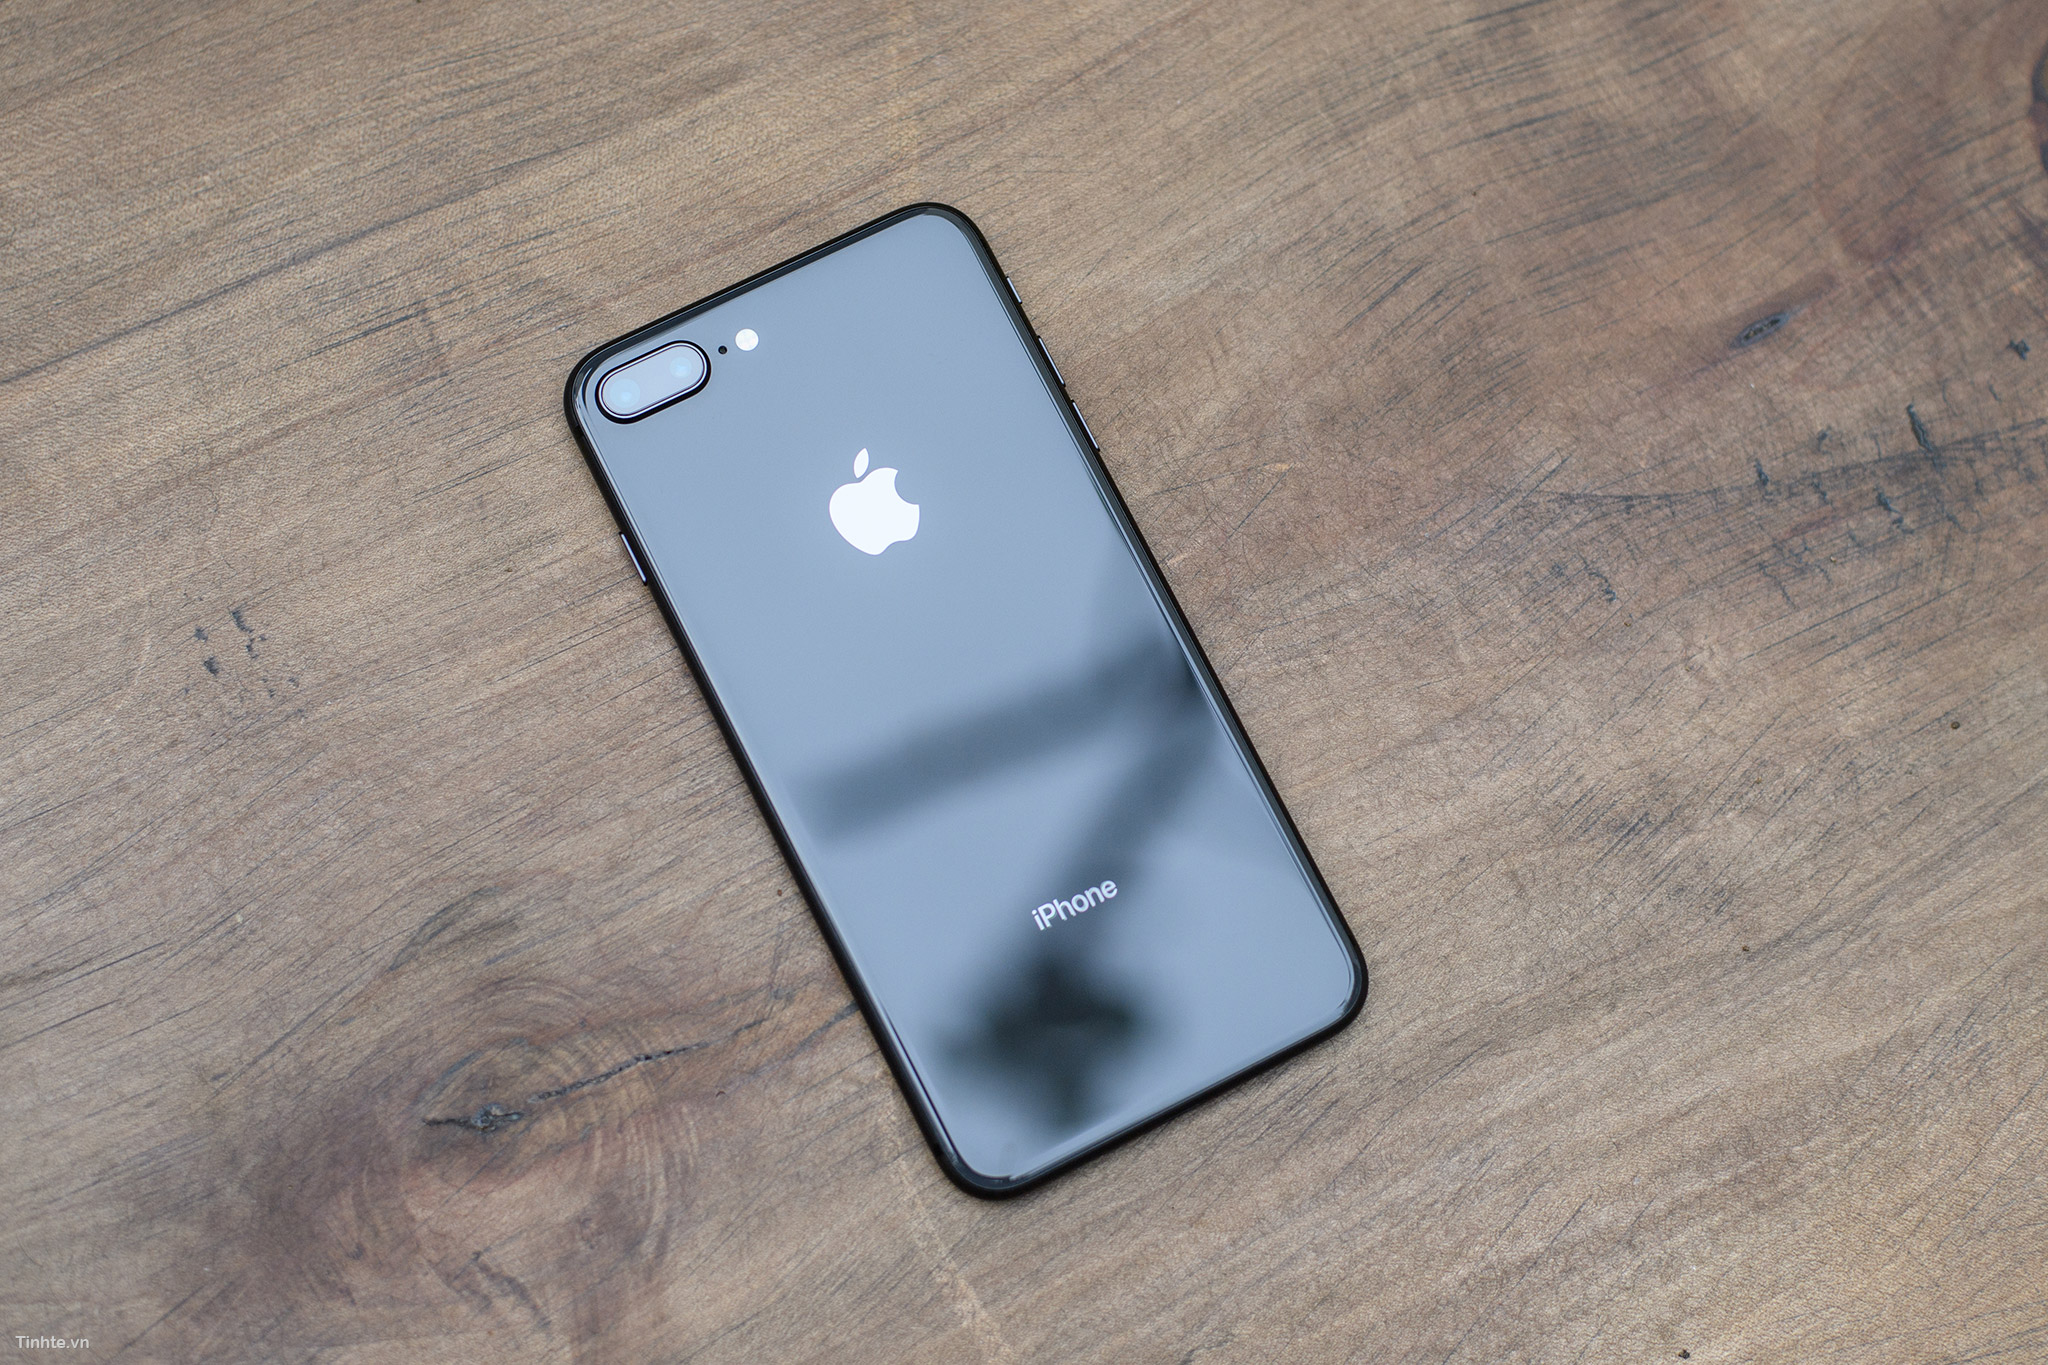 iPhone 8/8 Plus Space Gray là một trong những màu sắc được yêu thích nhất của iPhone. Hình ảnh liên quan sẽ cho thấy sự hoàn thiện của iPhone 8/8 Plus Space Gray với màu sắc trang nhã và nét đột phá trong thiết kế.